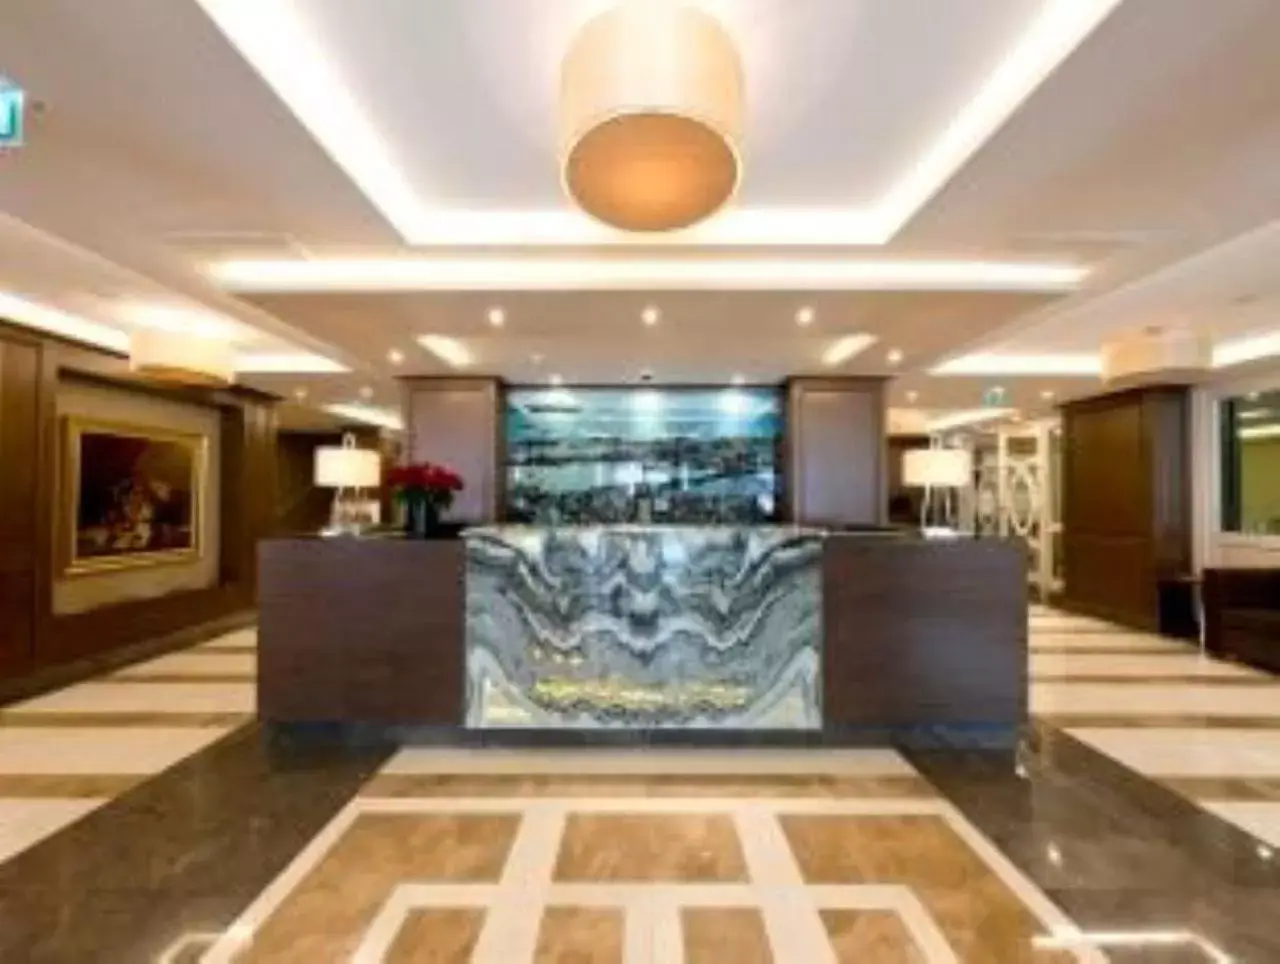 Lobby or reception, Lobby/Reception in Nidya Hotel Galataport